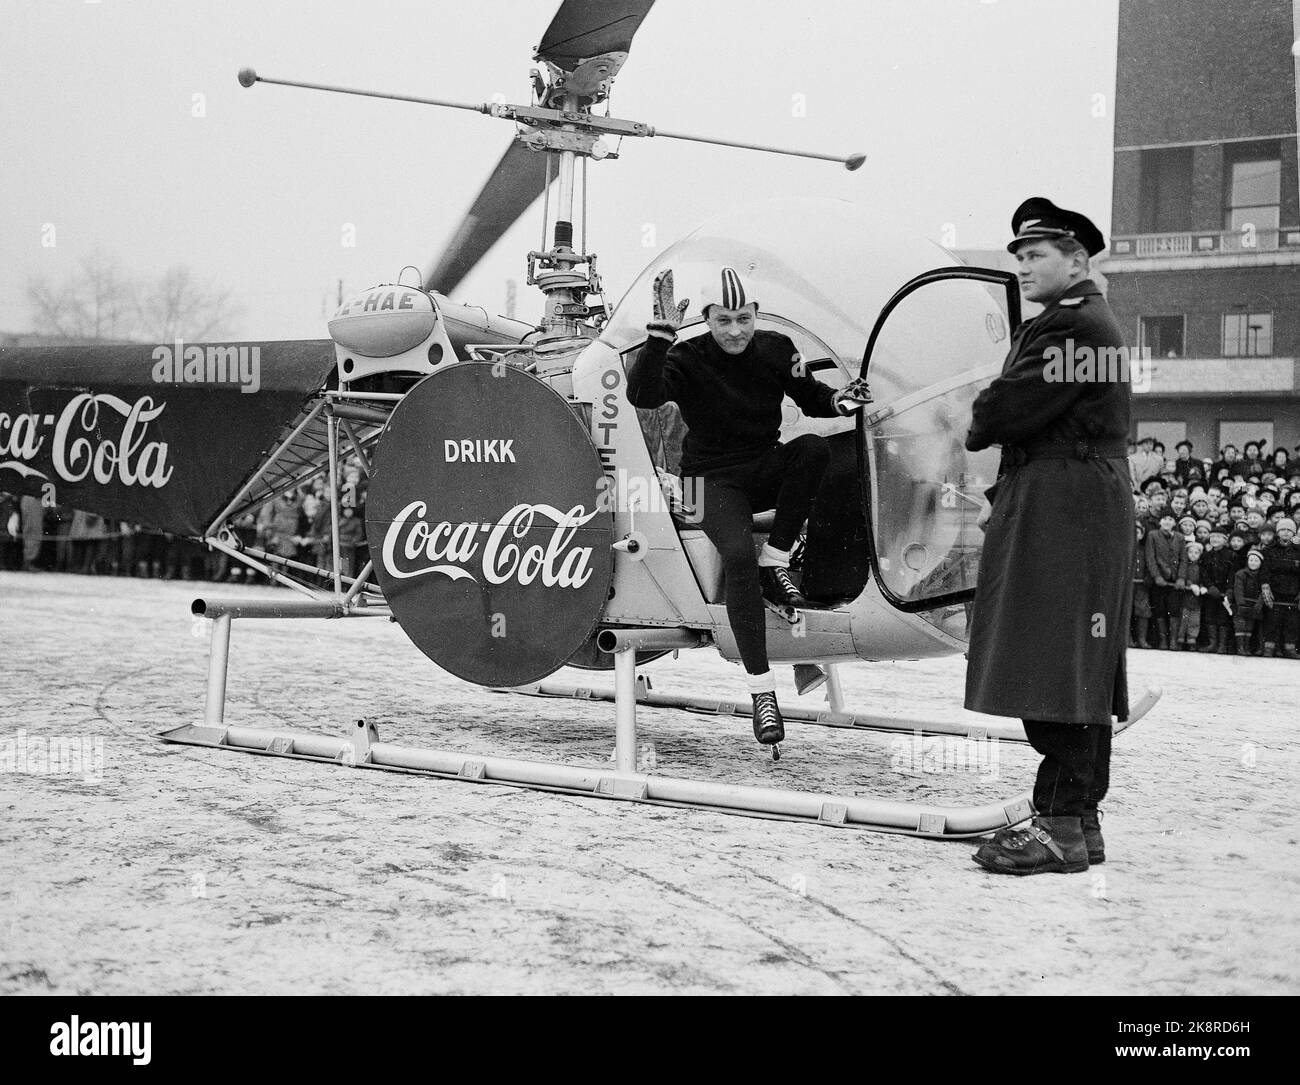 Jeux olympiques d'hiver d'Oslo 1952. Pendant les Jeux Olympiques, Coca Cola a eu une grande campagne publicitaire. Dans la photo, nous voyons un hélicoptère avec la publicité Coca Cola qui atterrit devant la mairie. Un patineur se lève. Banque D'Images